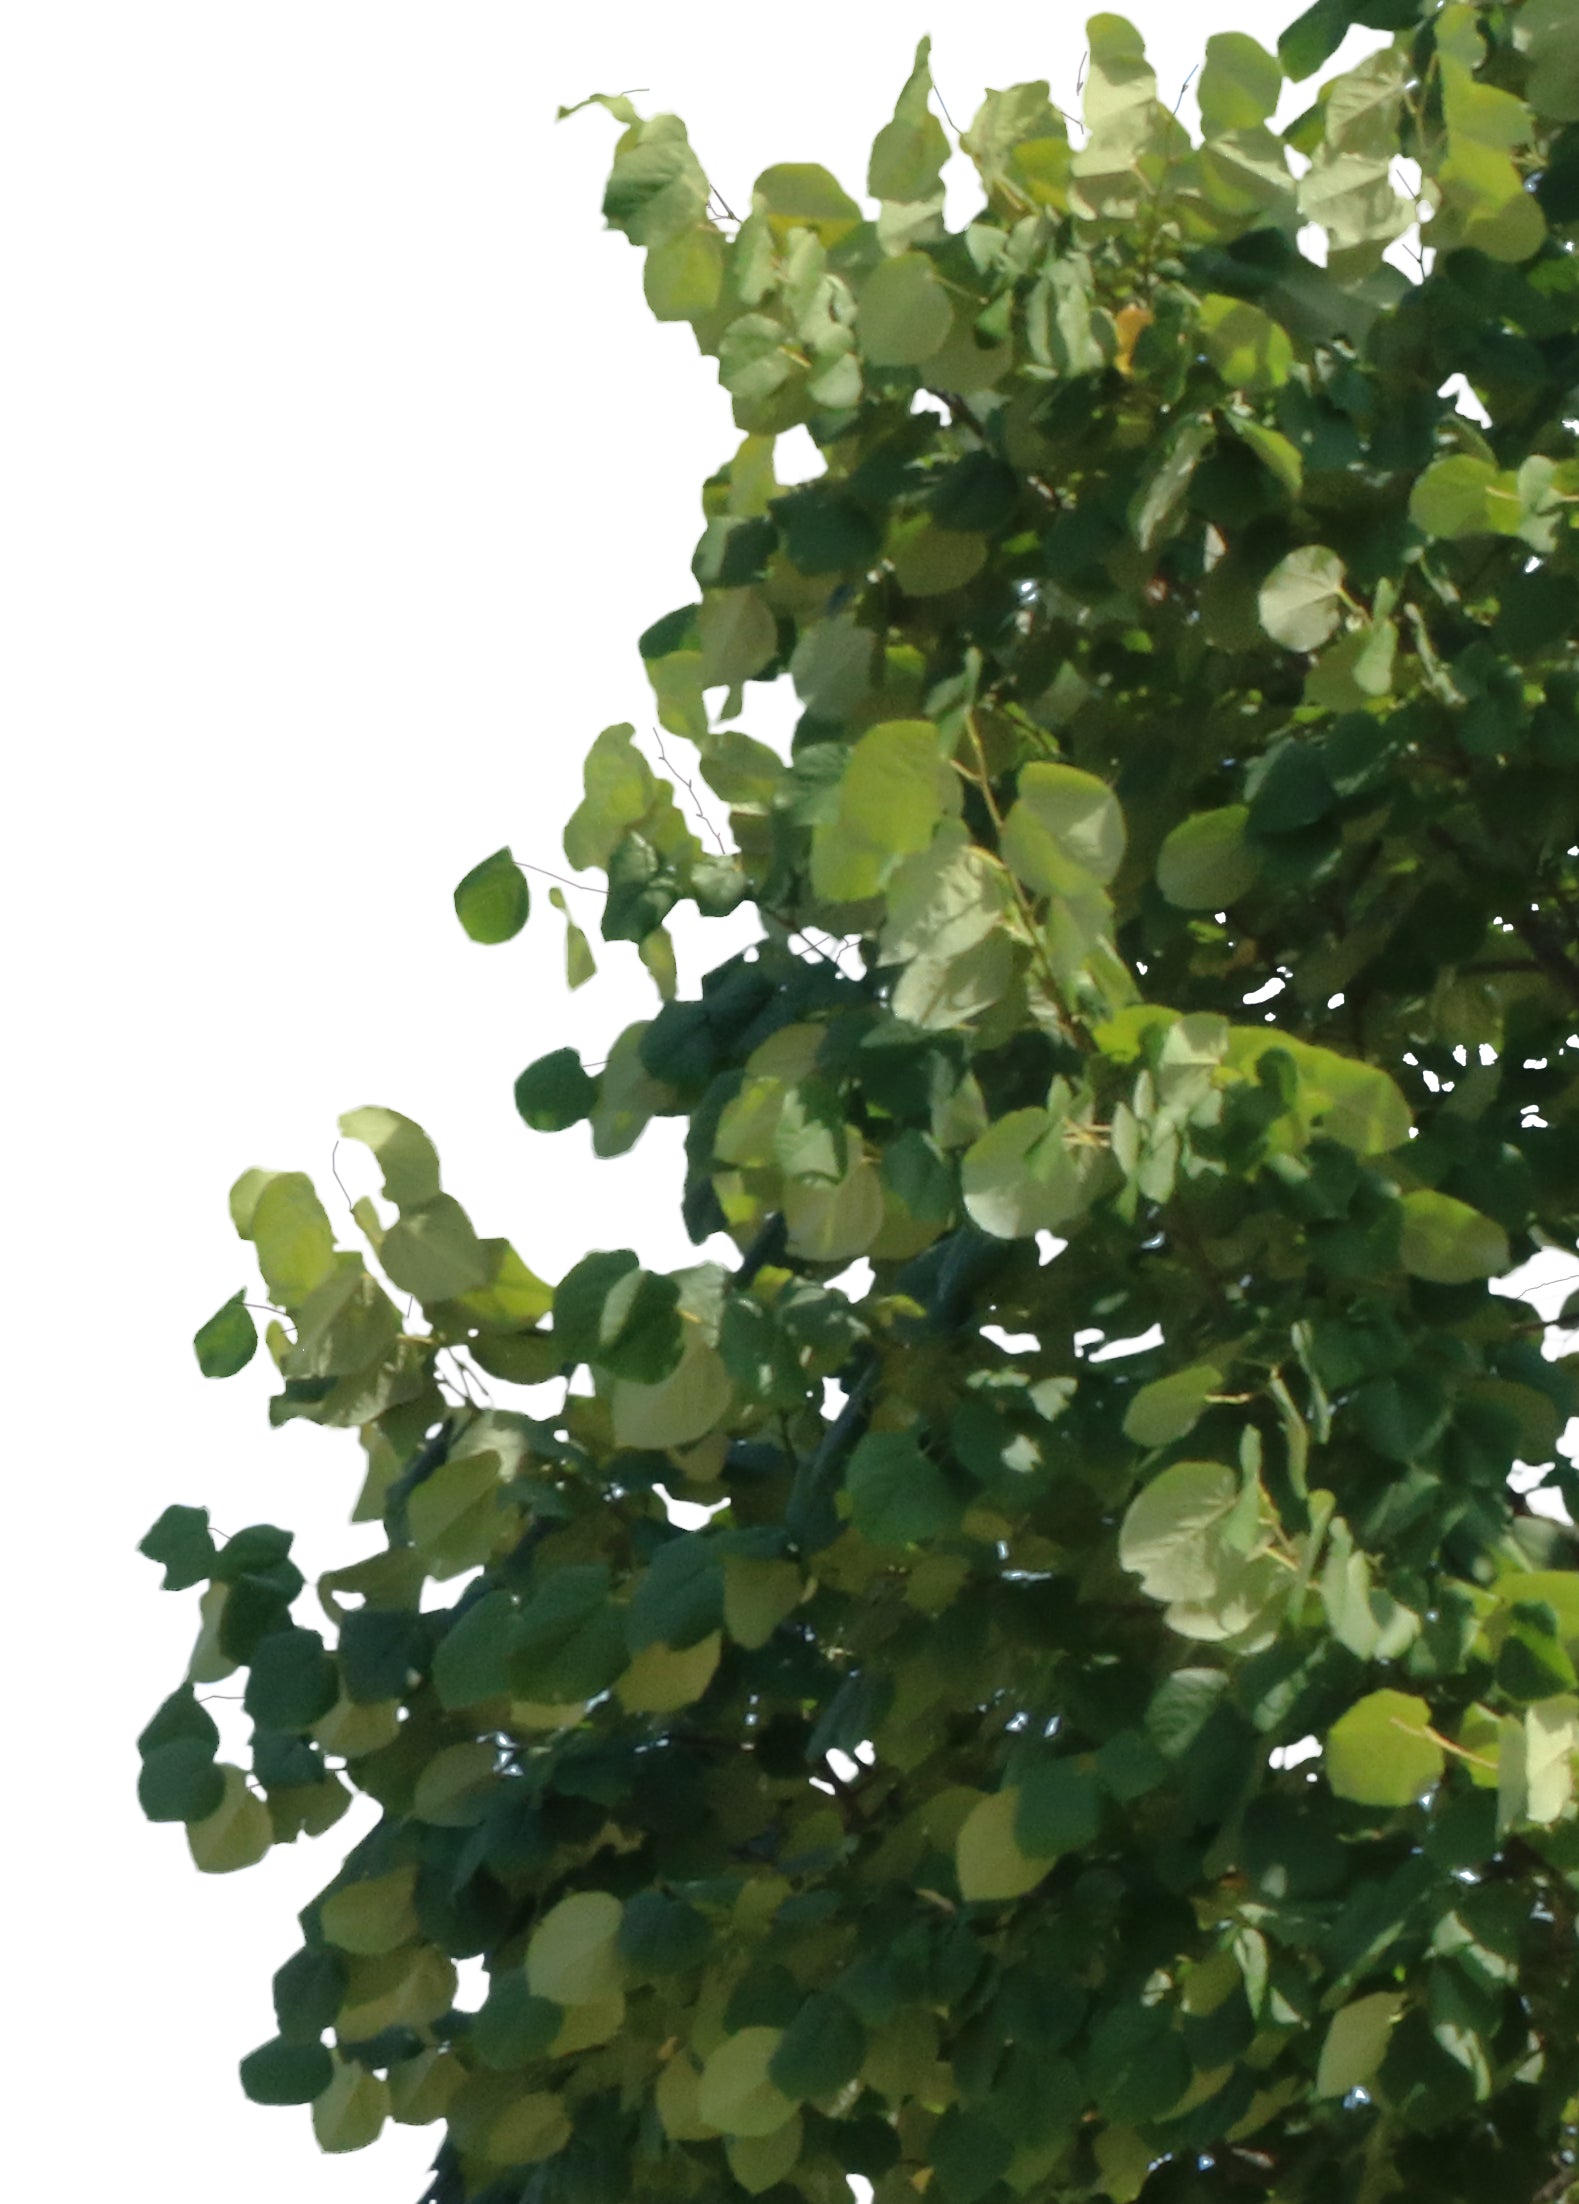 Tilia tomentosa - cutout trees